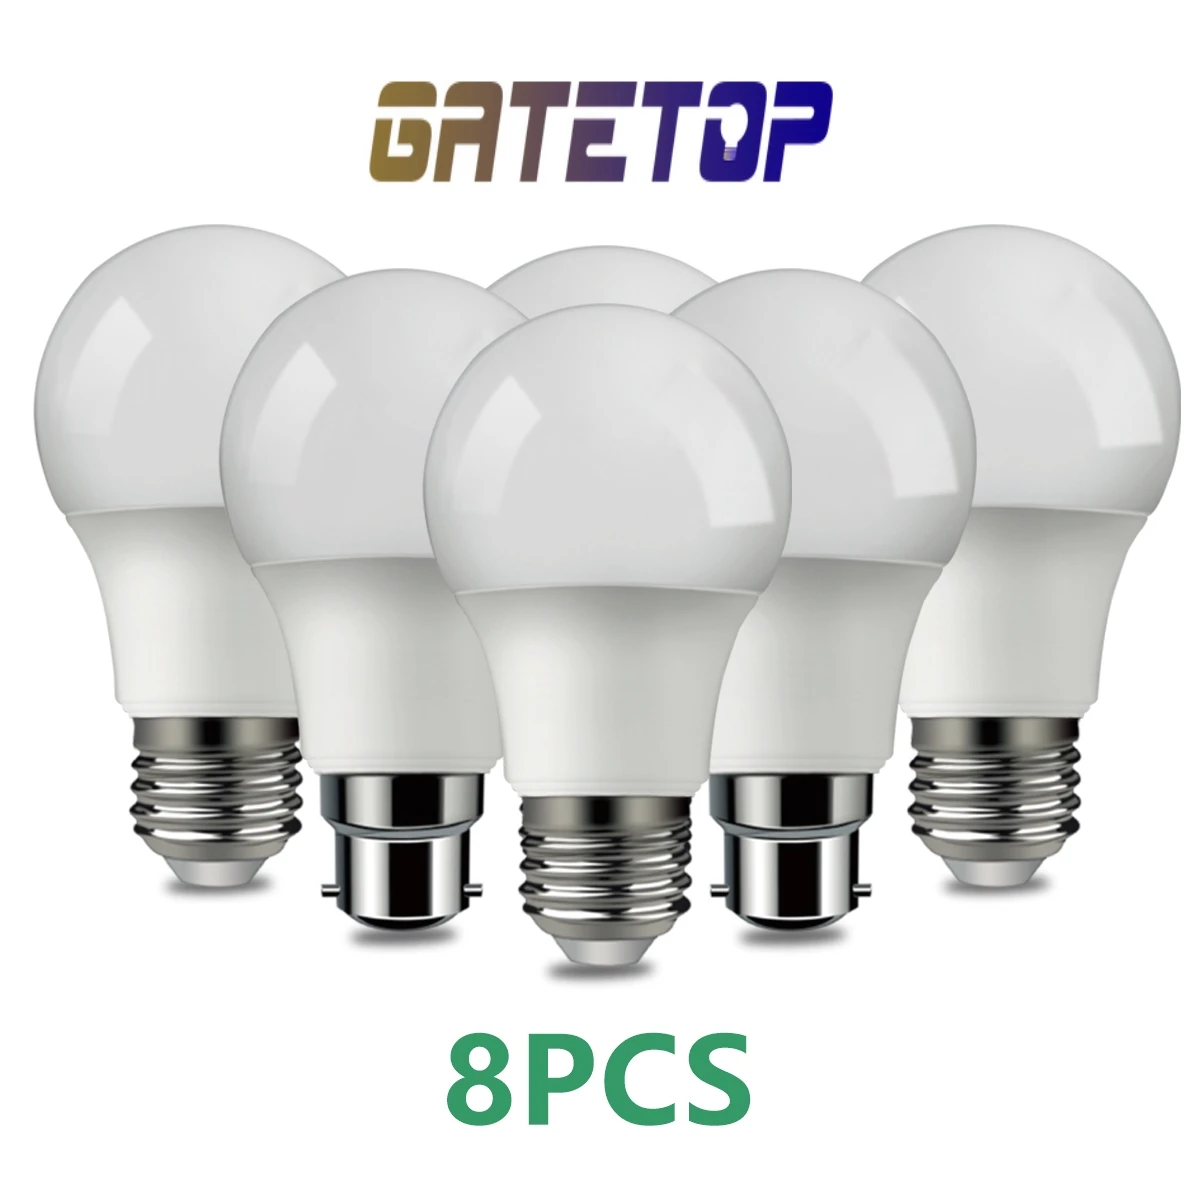 8PCS נורת LED 220V Lampara E14 E27 Led B22 אור אור גבוהה, יעילות מתח גבוה 3W-18W נברשת תאורה מנורת הבית. - 0